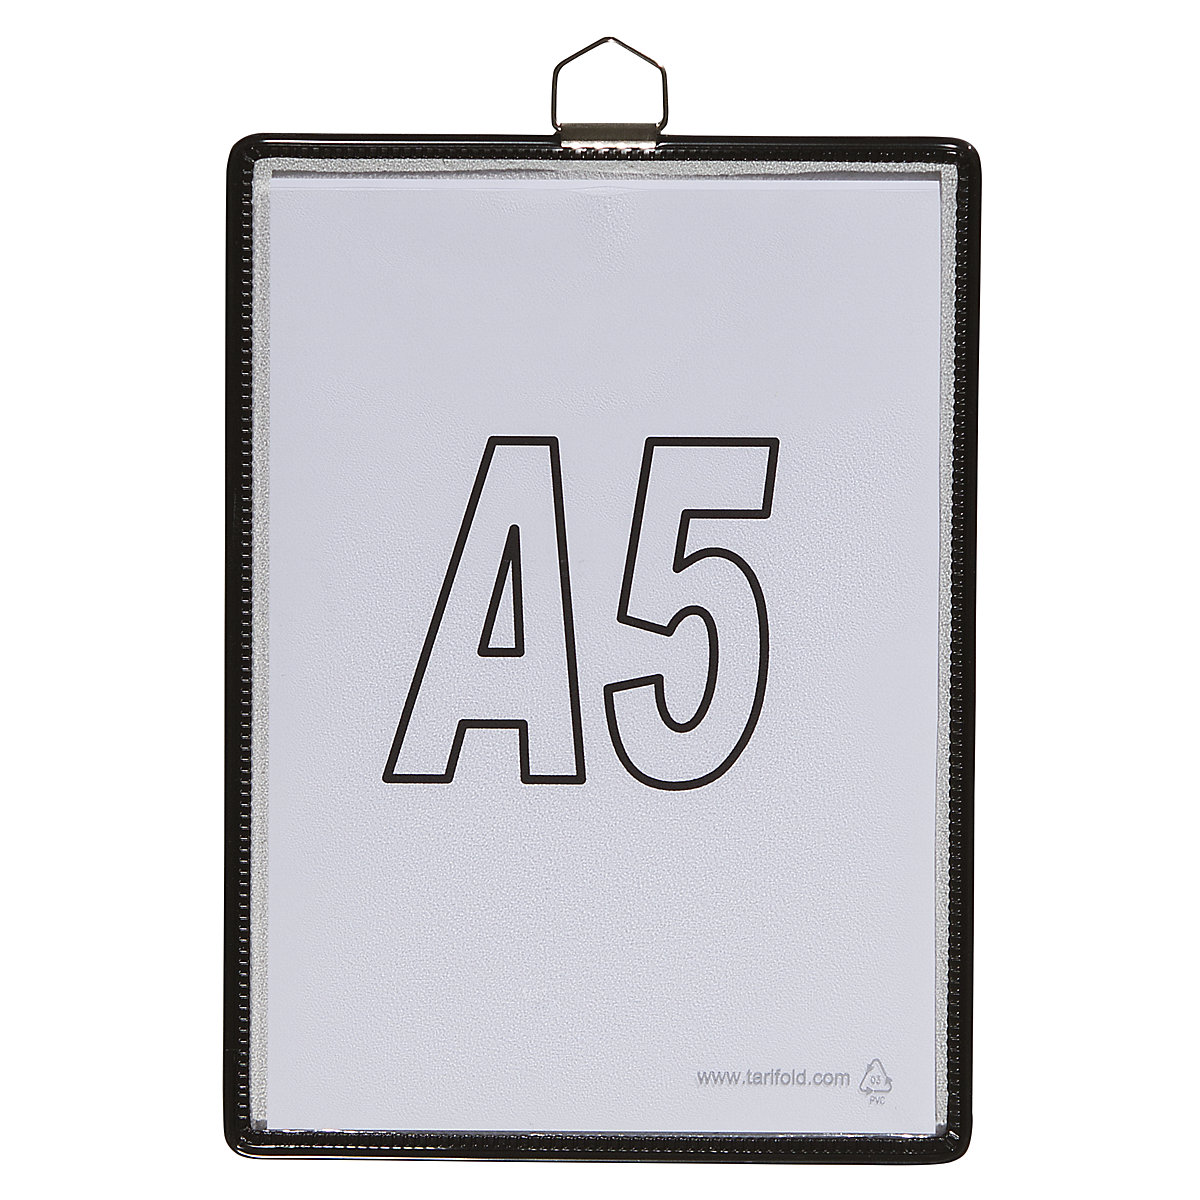 Pochette transparente à accrocher – Tarifold, pour format A5, coloris noir, lot de 10-6